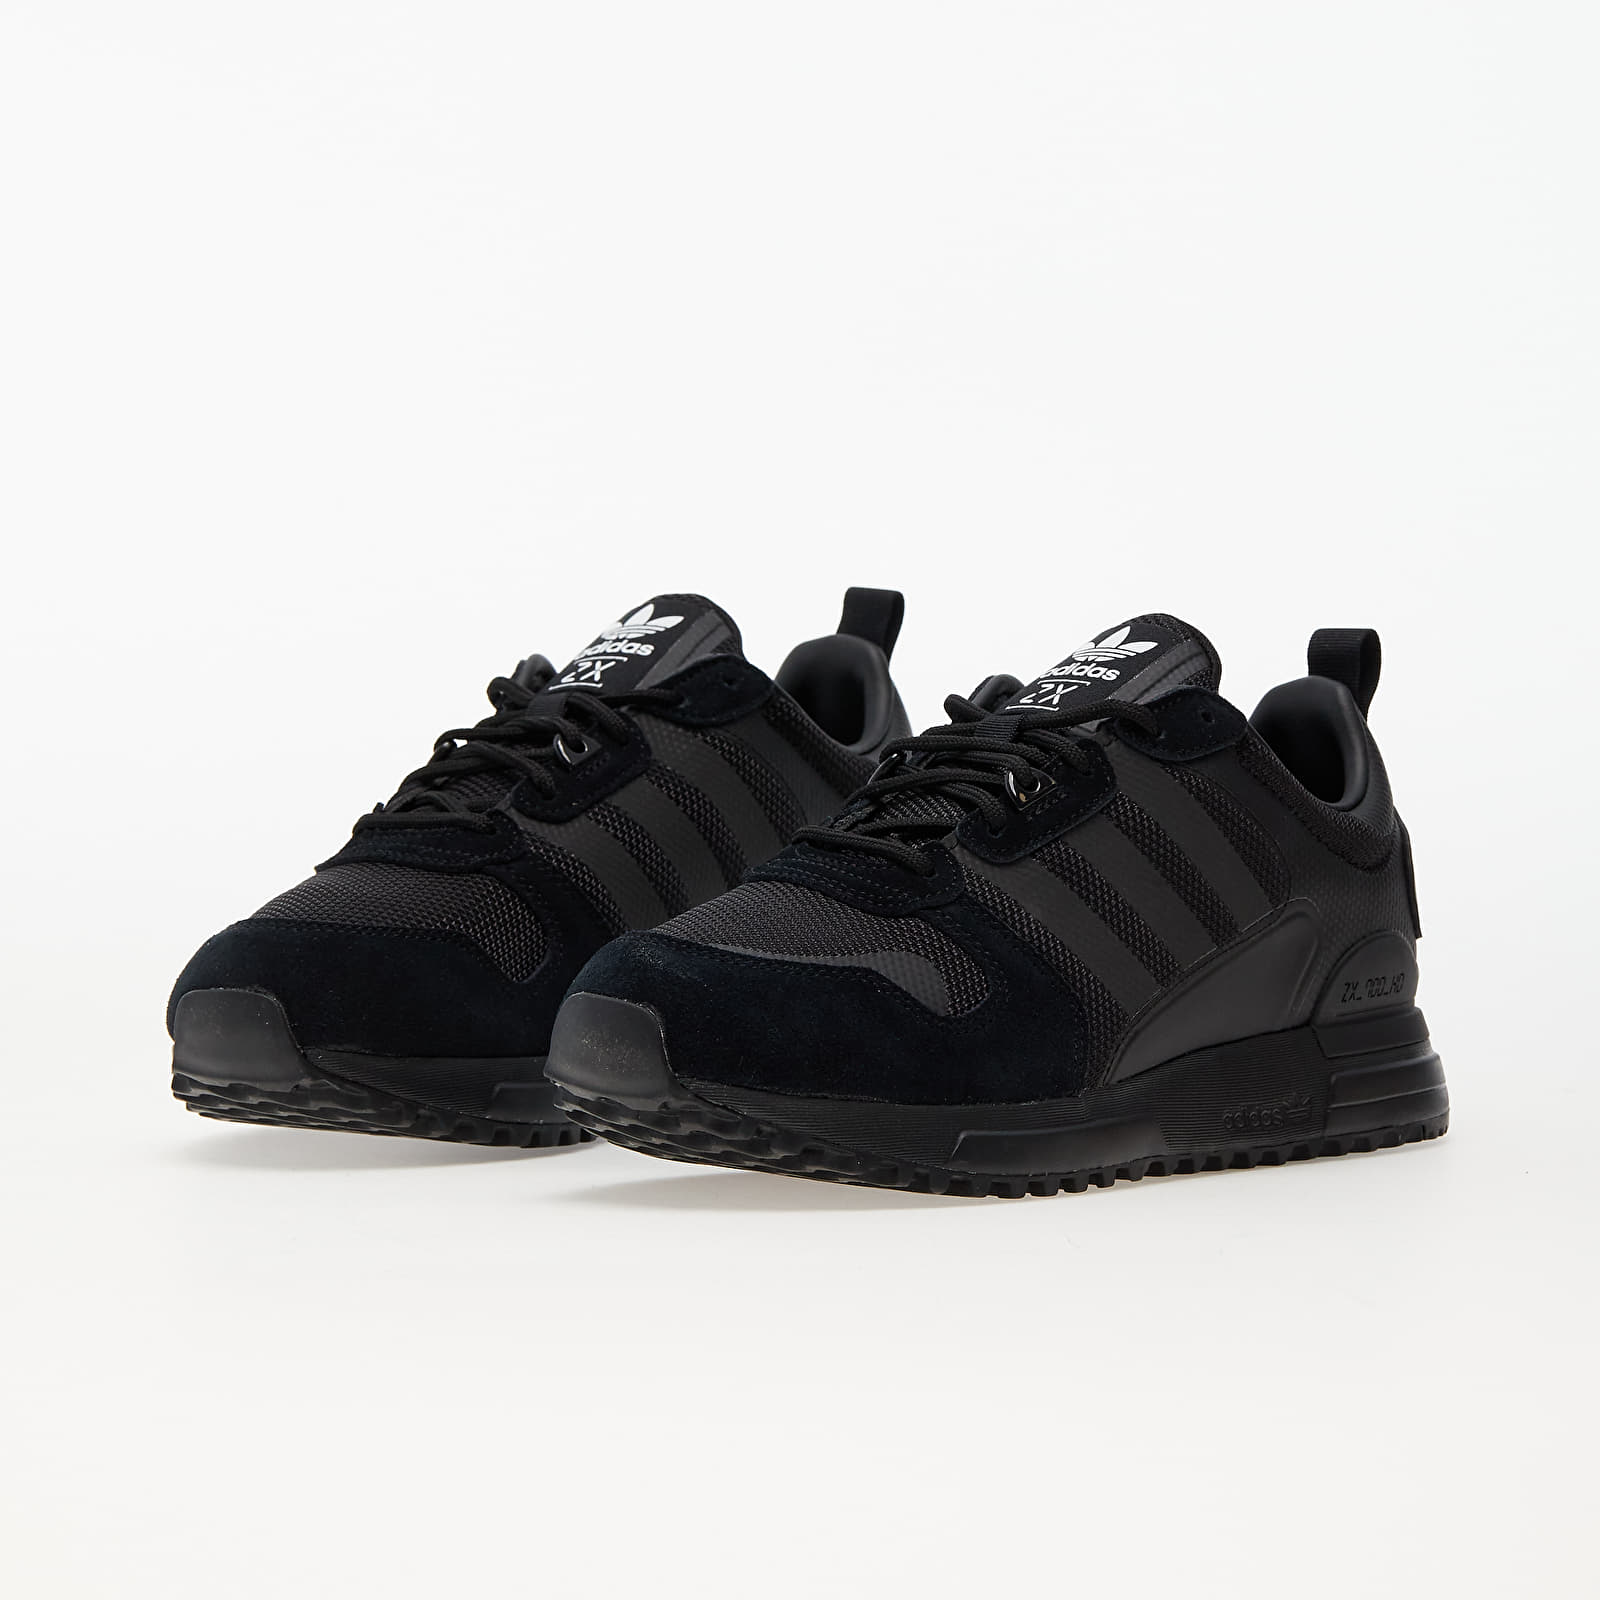 Men's shoes adidas ZX 700 HD Core Black/ Core Black/ Ftw White | Footshop